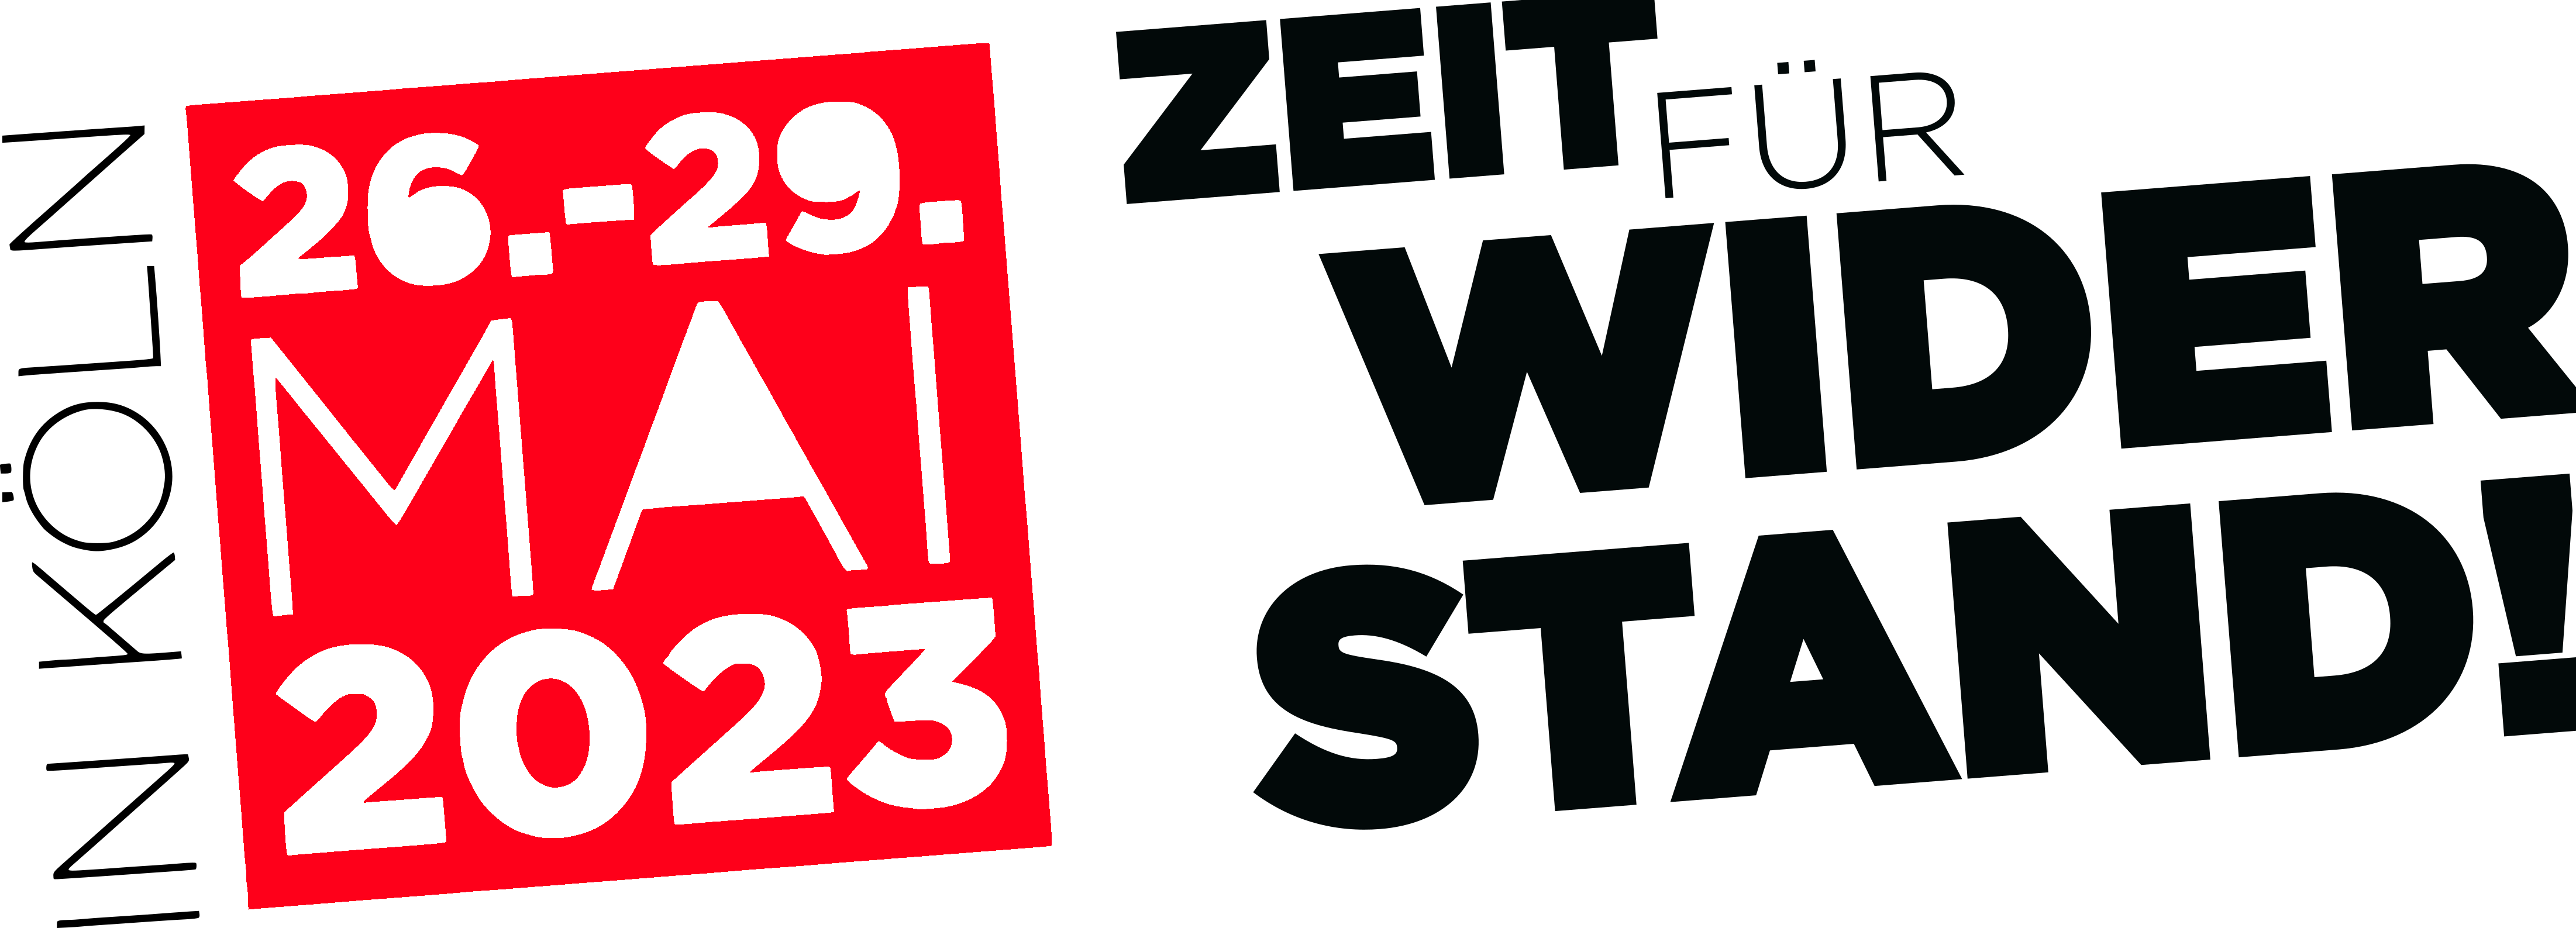 26. - 29. Mai 2023 in Köln. Zeit für Widerstand!